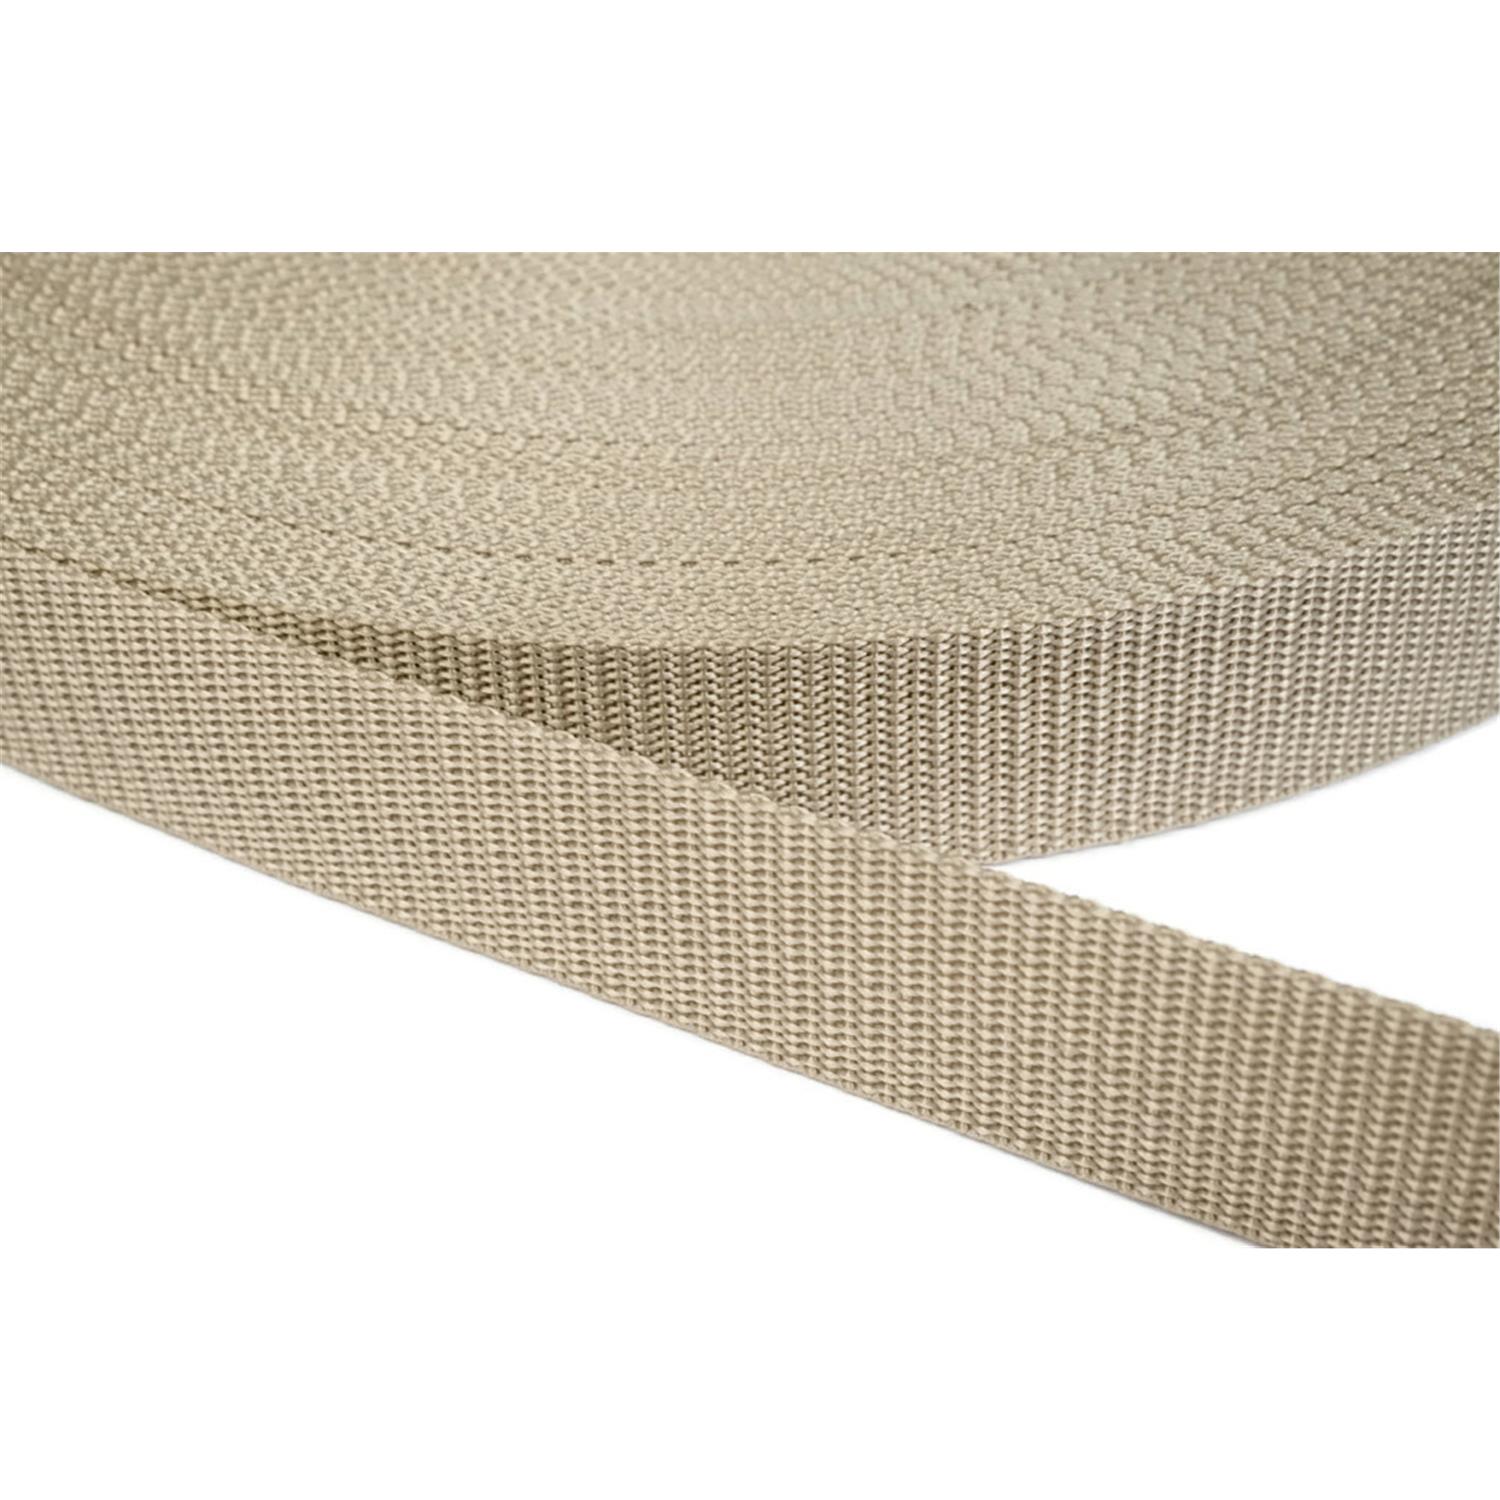 Gurtband 40mm breit aus Polypropylen in 41 Farben 03 - beige 12 Meter